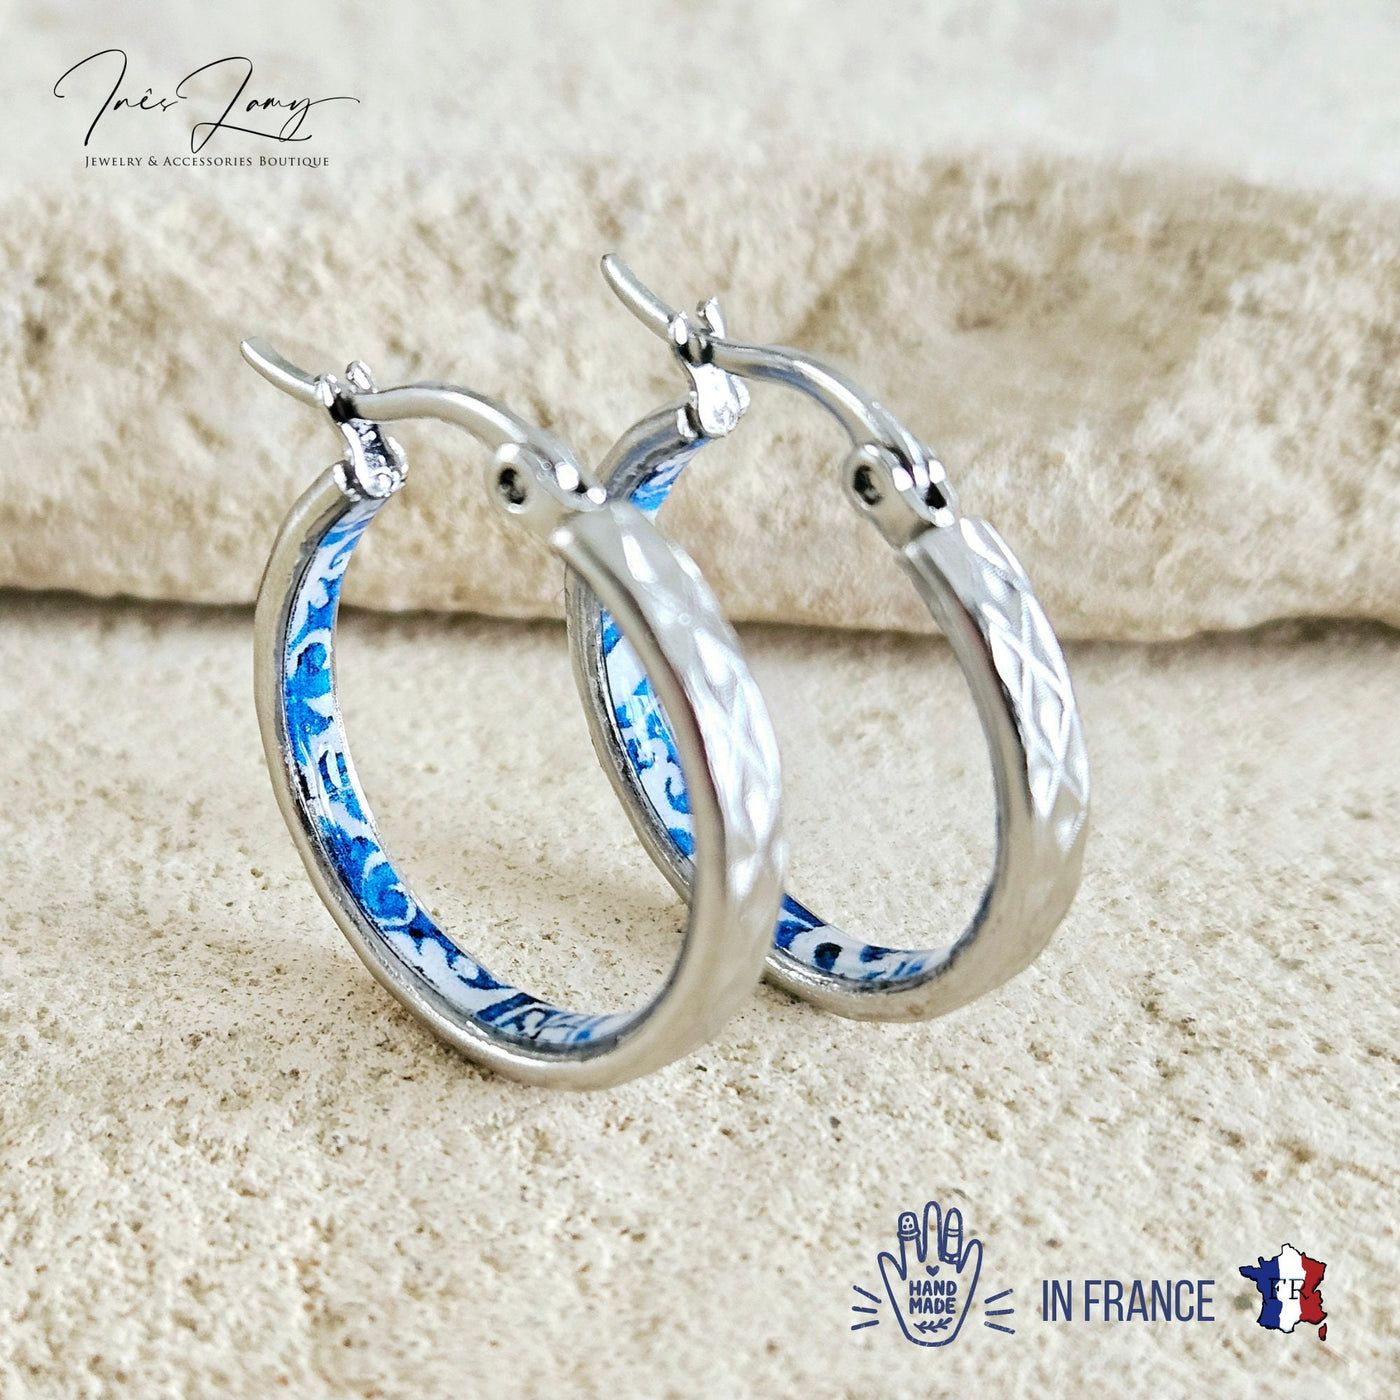 Antique BLUE HOOP Tile Earring Blue Flower Silver STEEL Azulejo Silver Hoops Historical Jewelry Anniversary Women Handmade Fashion Gift